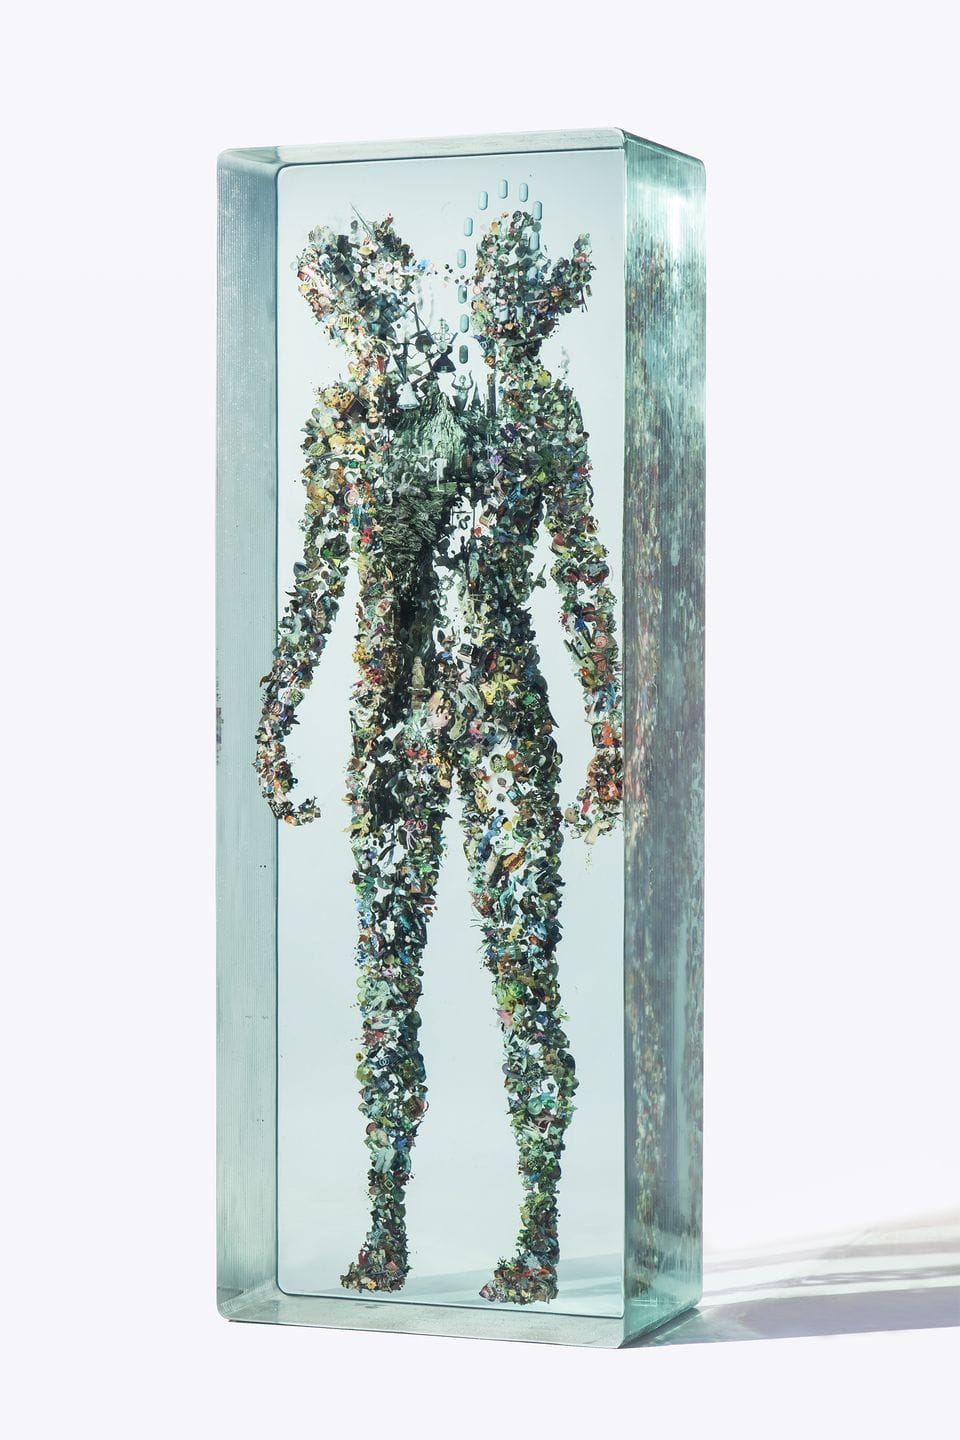 Sculpture en verre en forme d'homme réalisée par Dustin Yellin